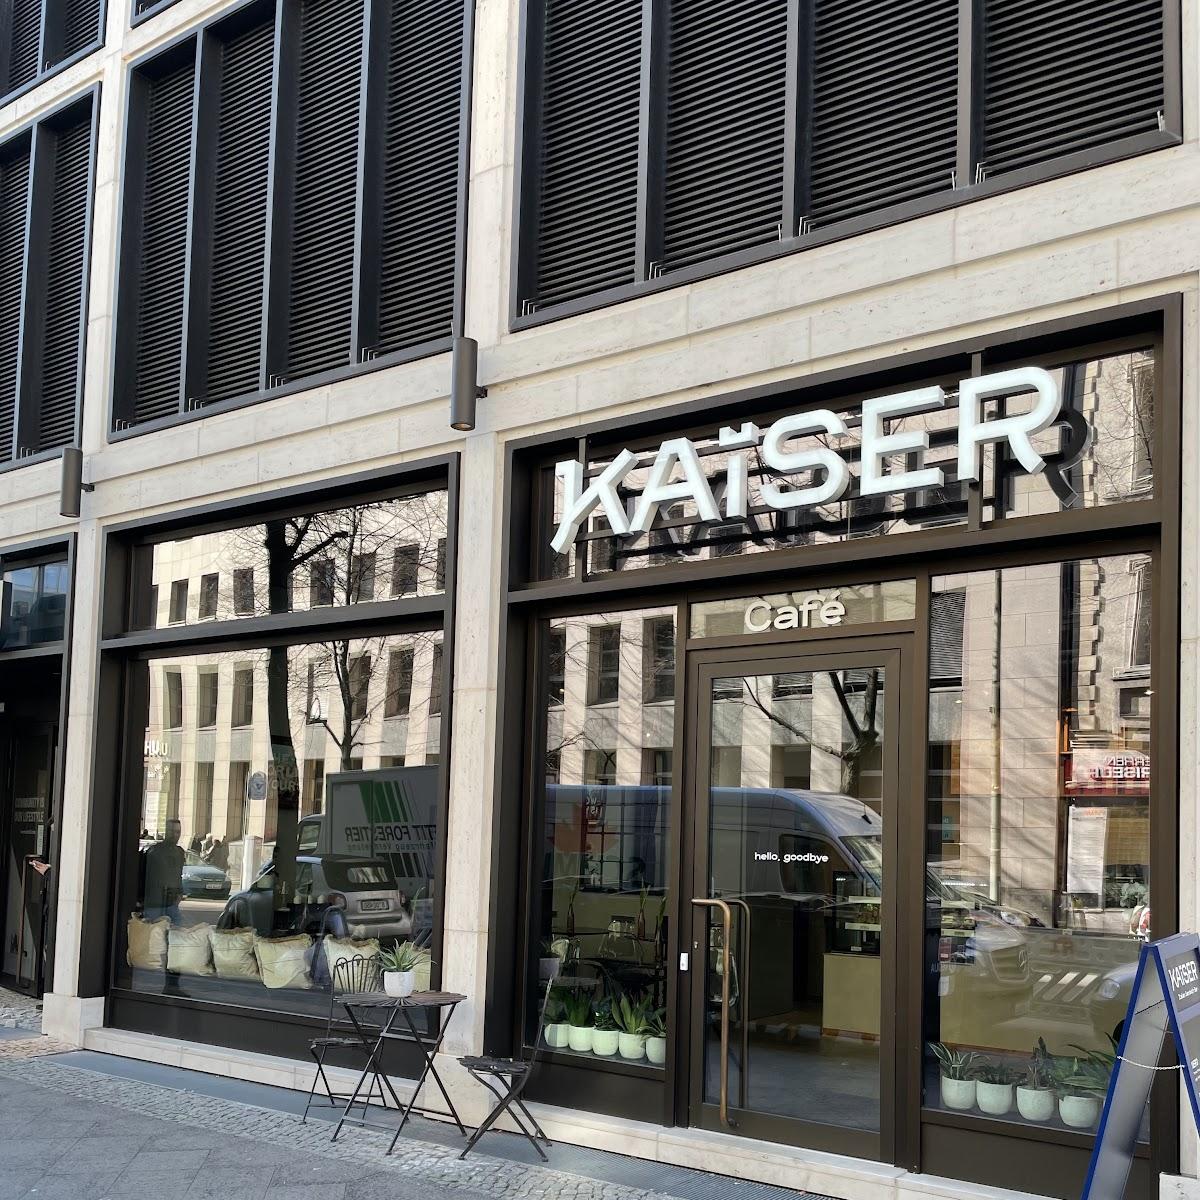 Restaurant "KAISER Cafe" in Berlin